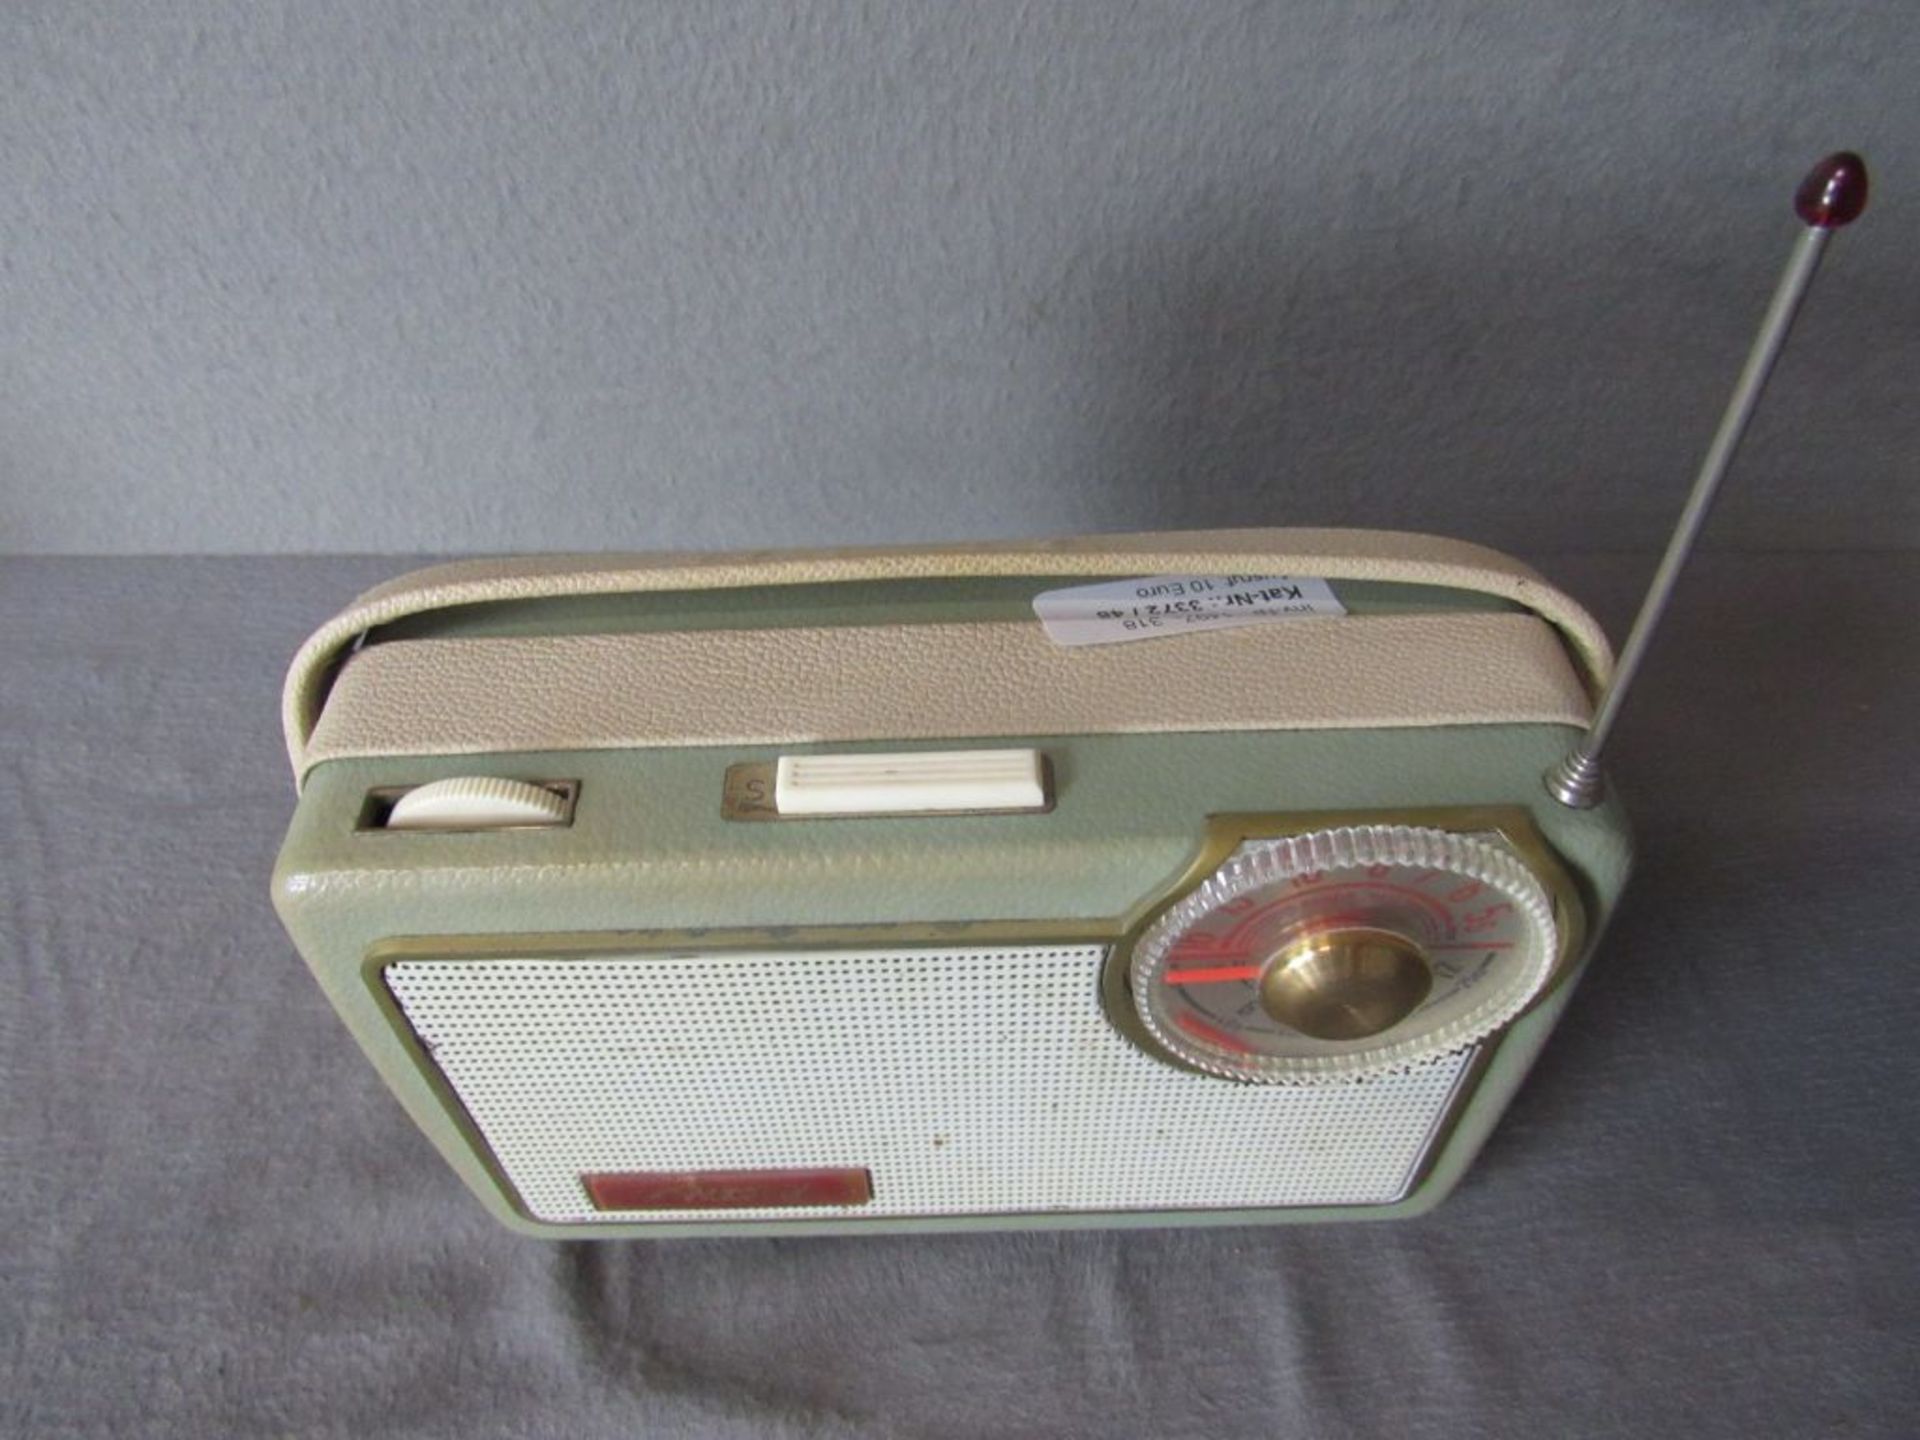 Kofferradio Akord mintgrün 50er Jahre - Bild 4 aus 6